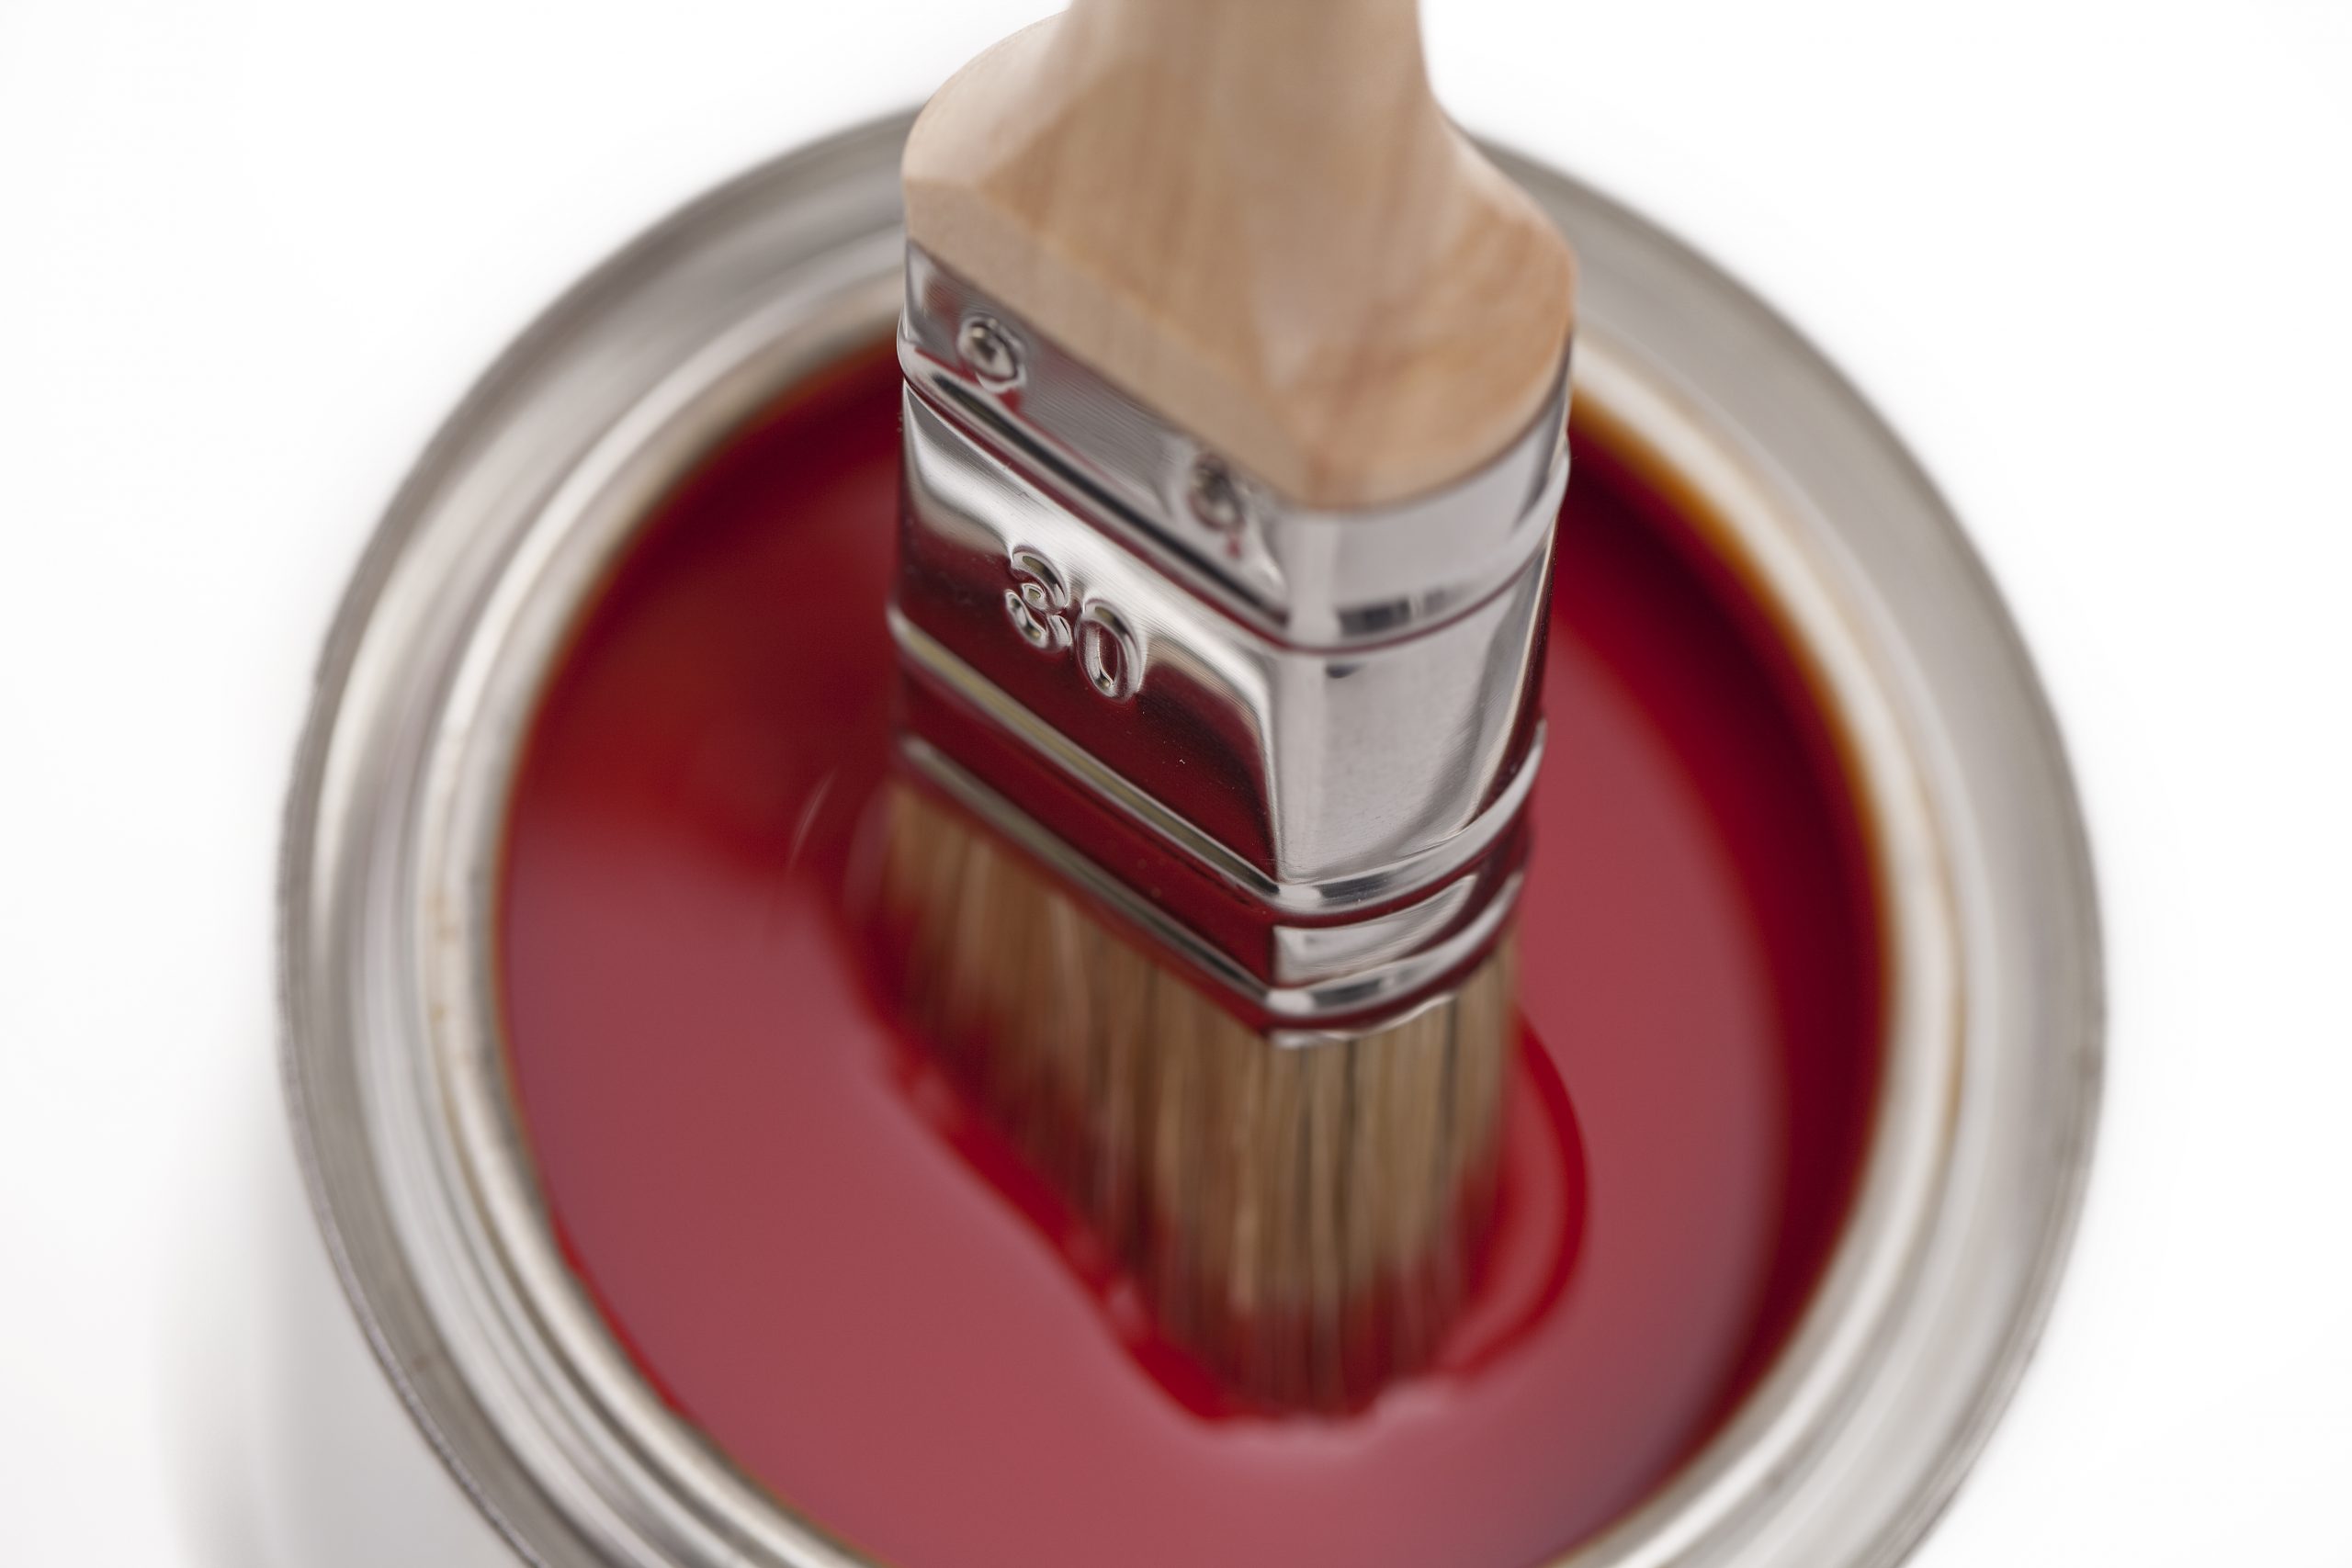 Pinceaux : comment les nettoyer après avoir peint ?